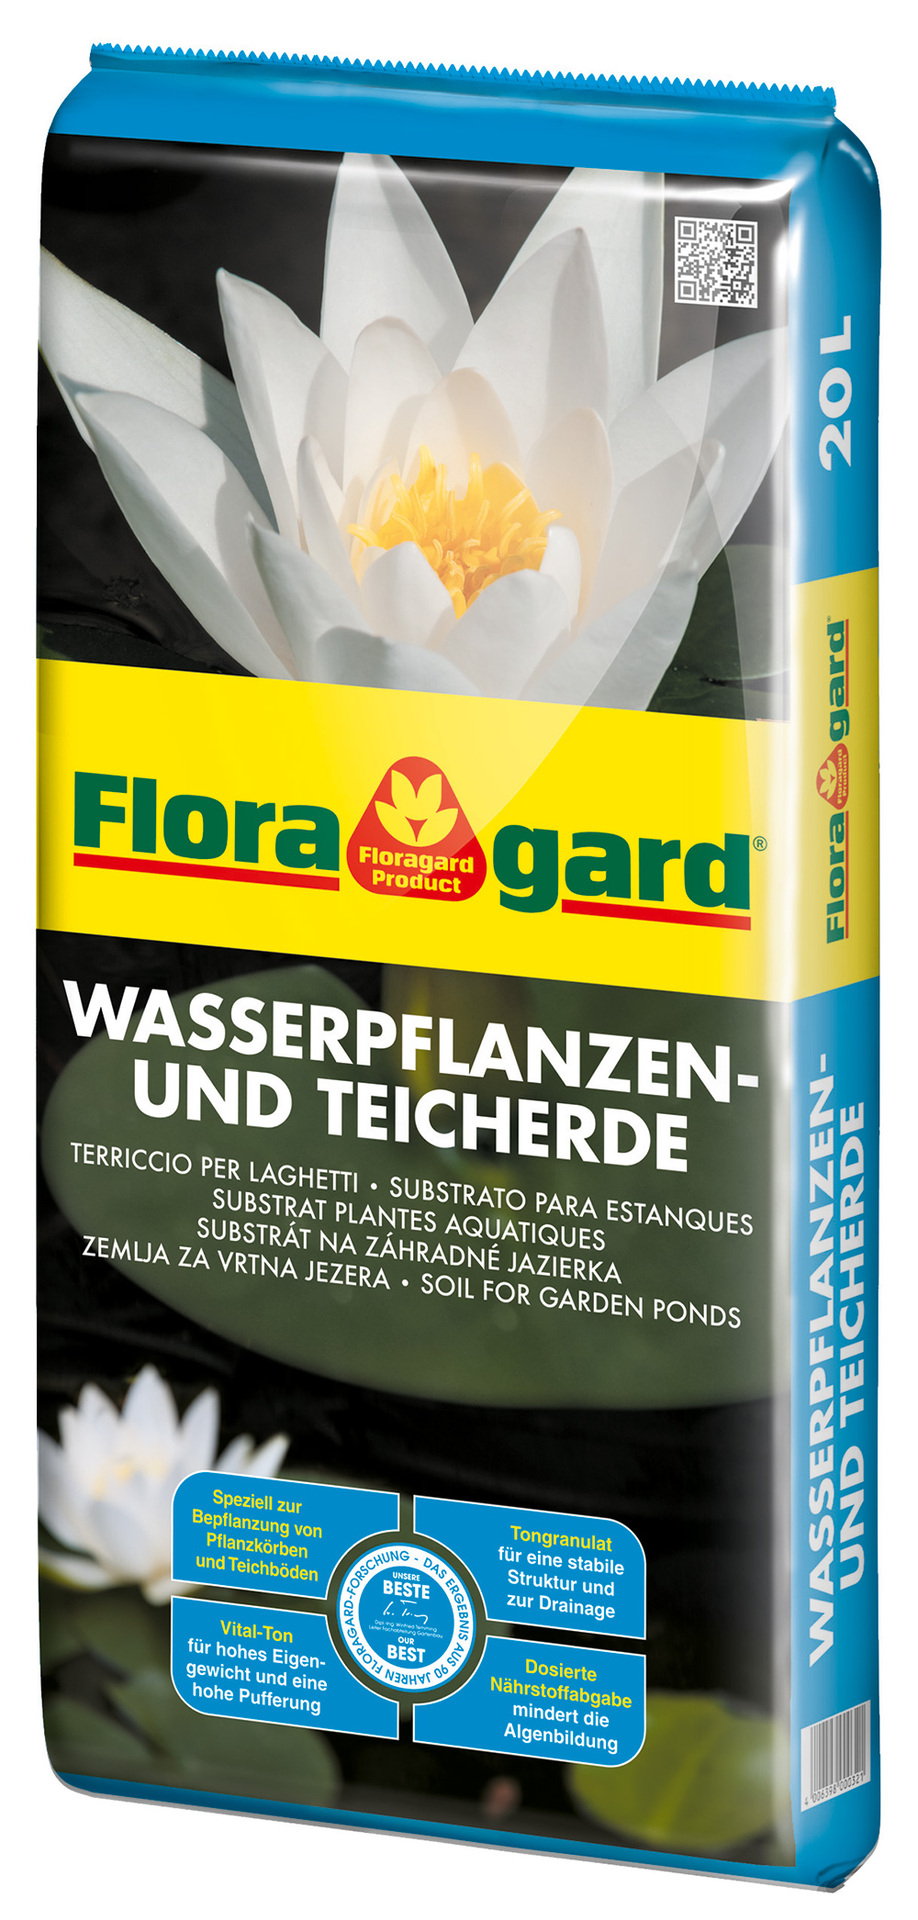 Floragard Vertriebs GmbH Teicherde 1x 20L